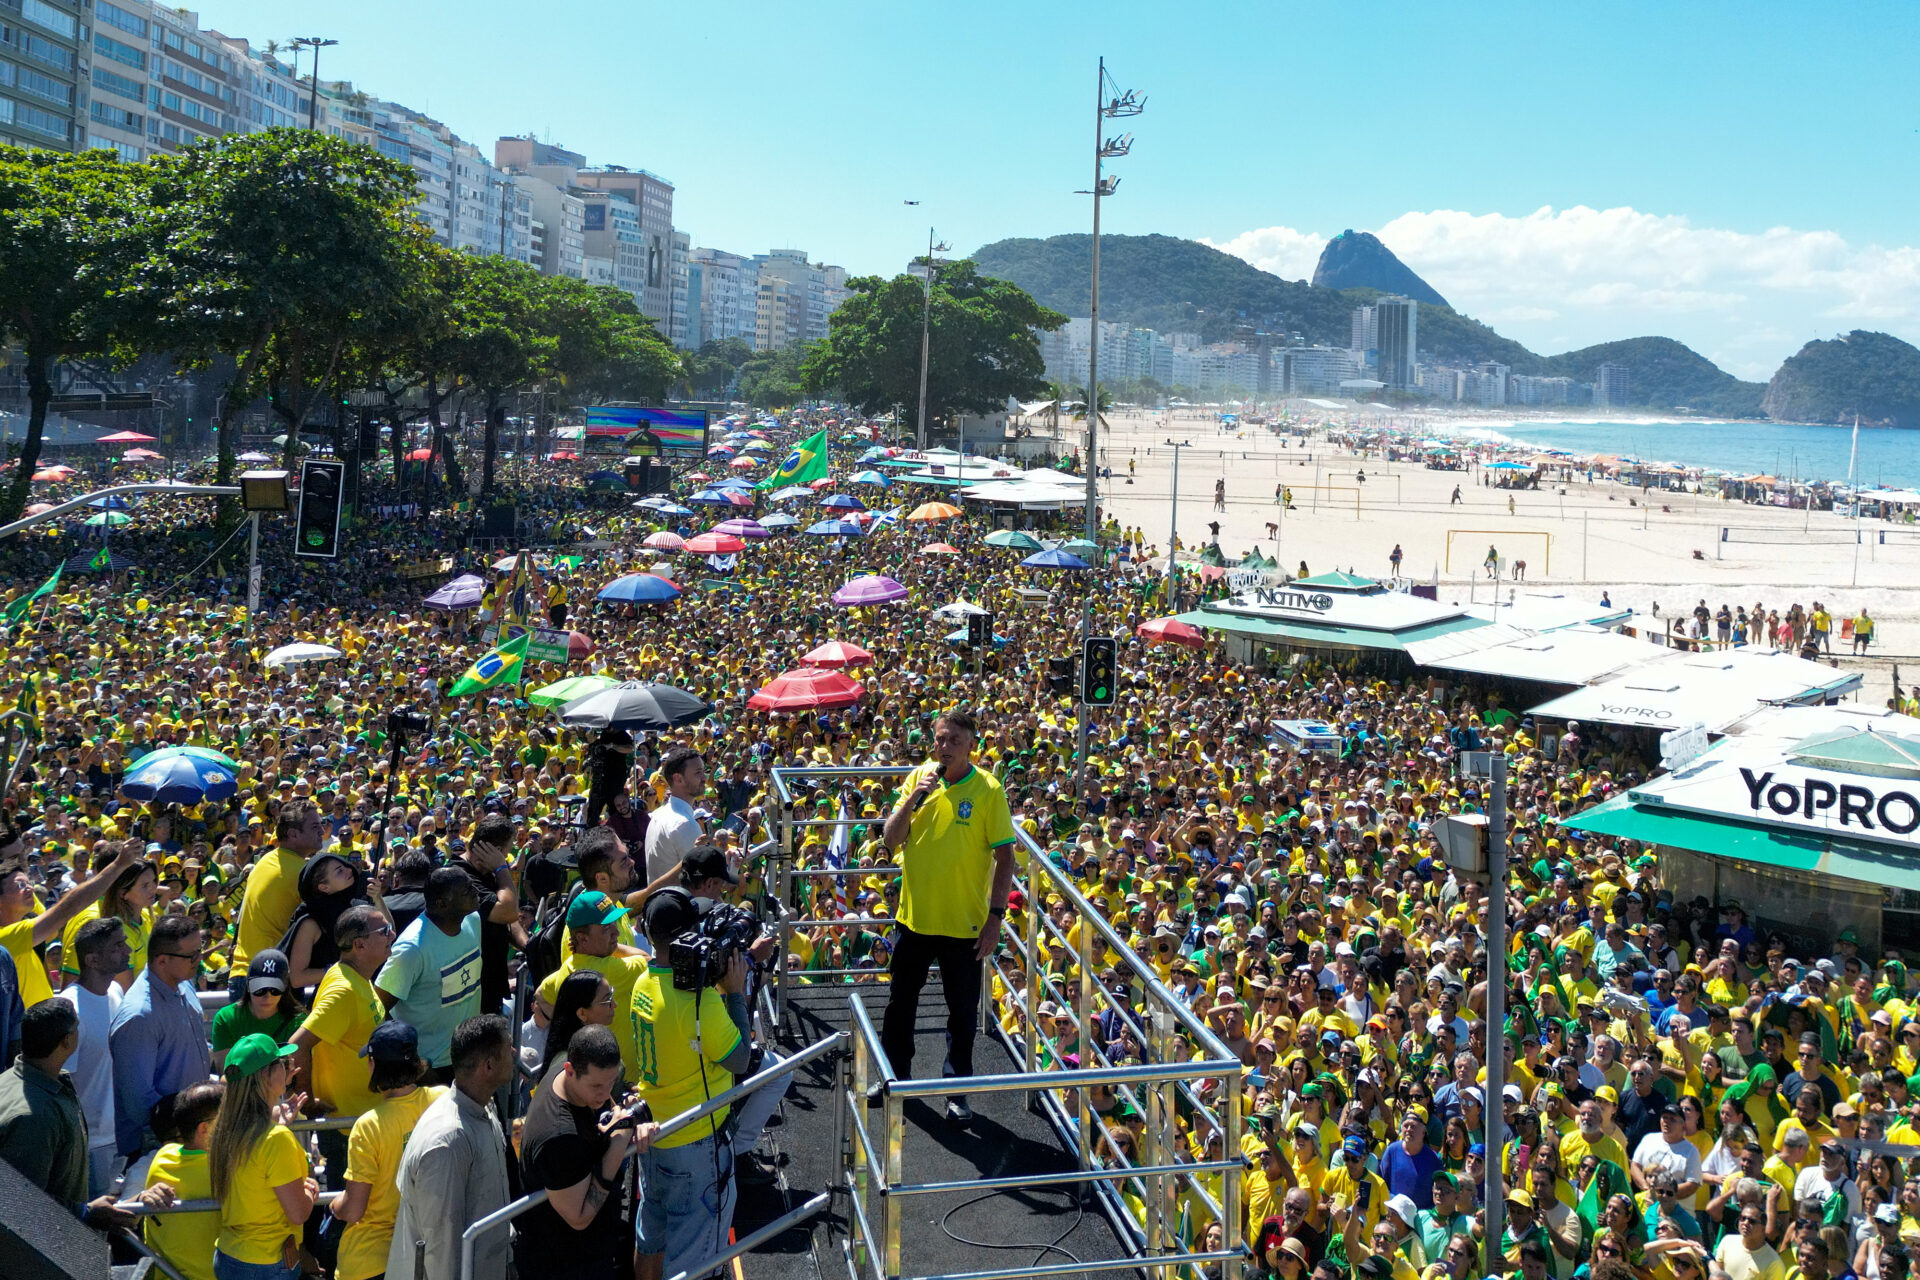 Masiva manifestación en Río de Janeiro en repudio a la censura y persecución política de Lula | Mundo Libre Diario